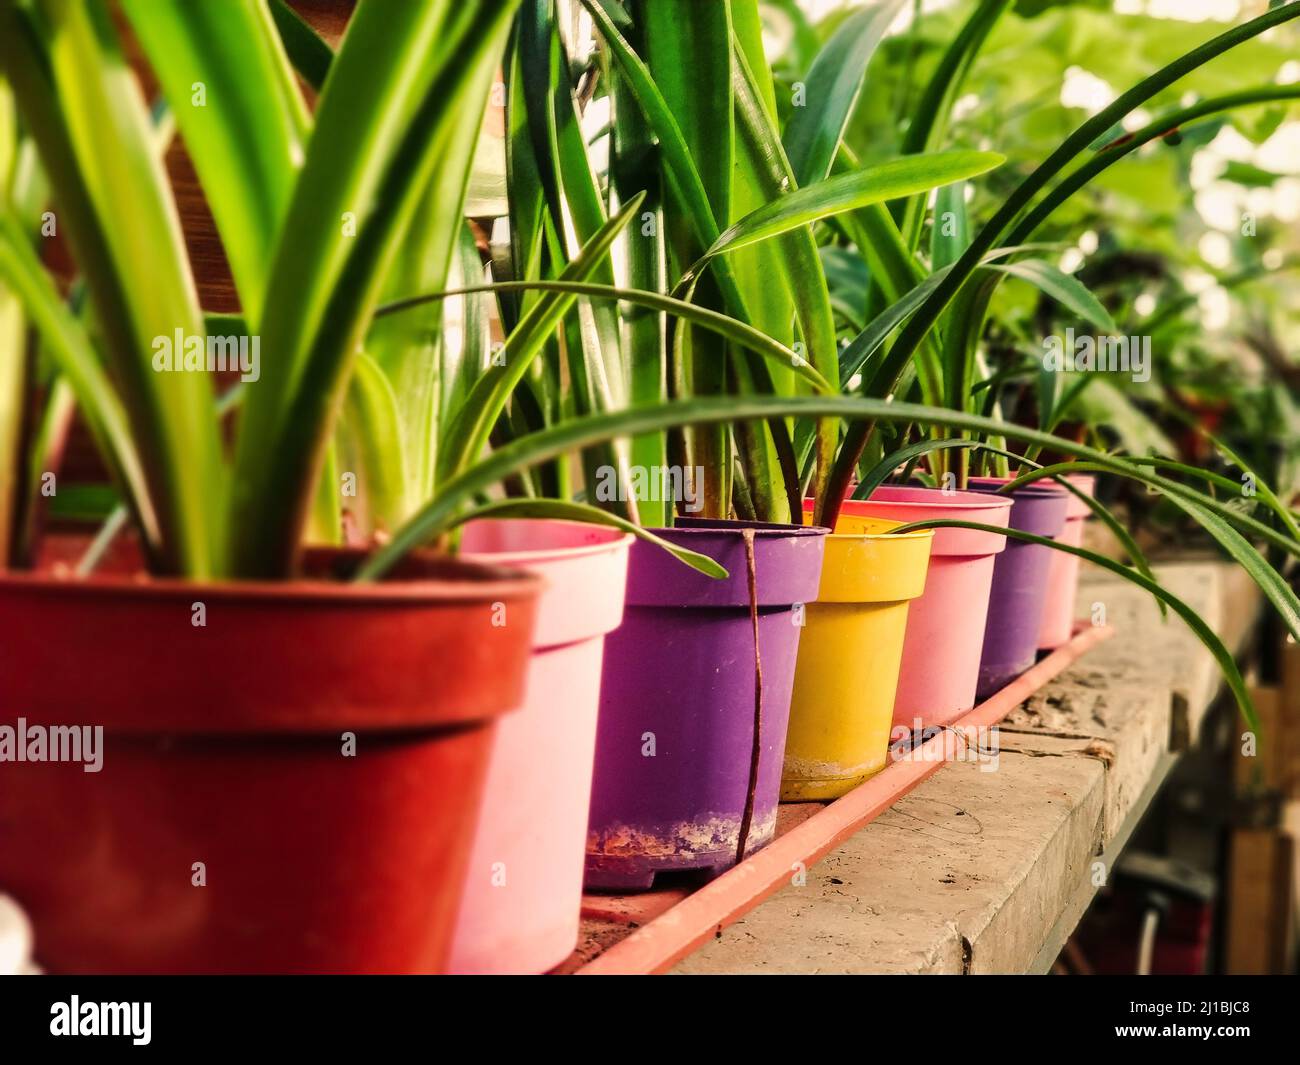 Mehrfarbige Blumentöpfe zum Pflanzen in einem Blumenladen Stockfotografie -  Alamy